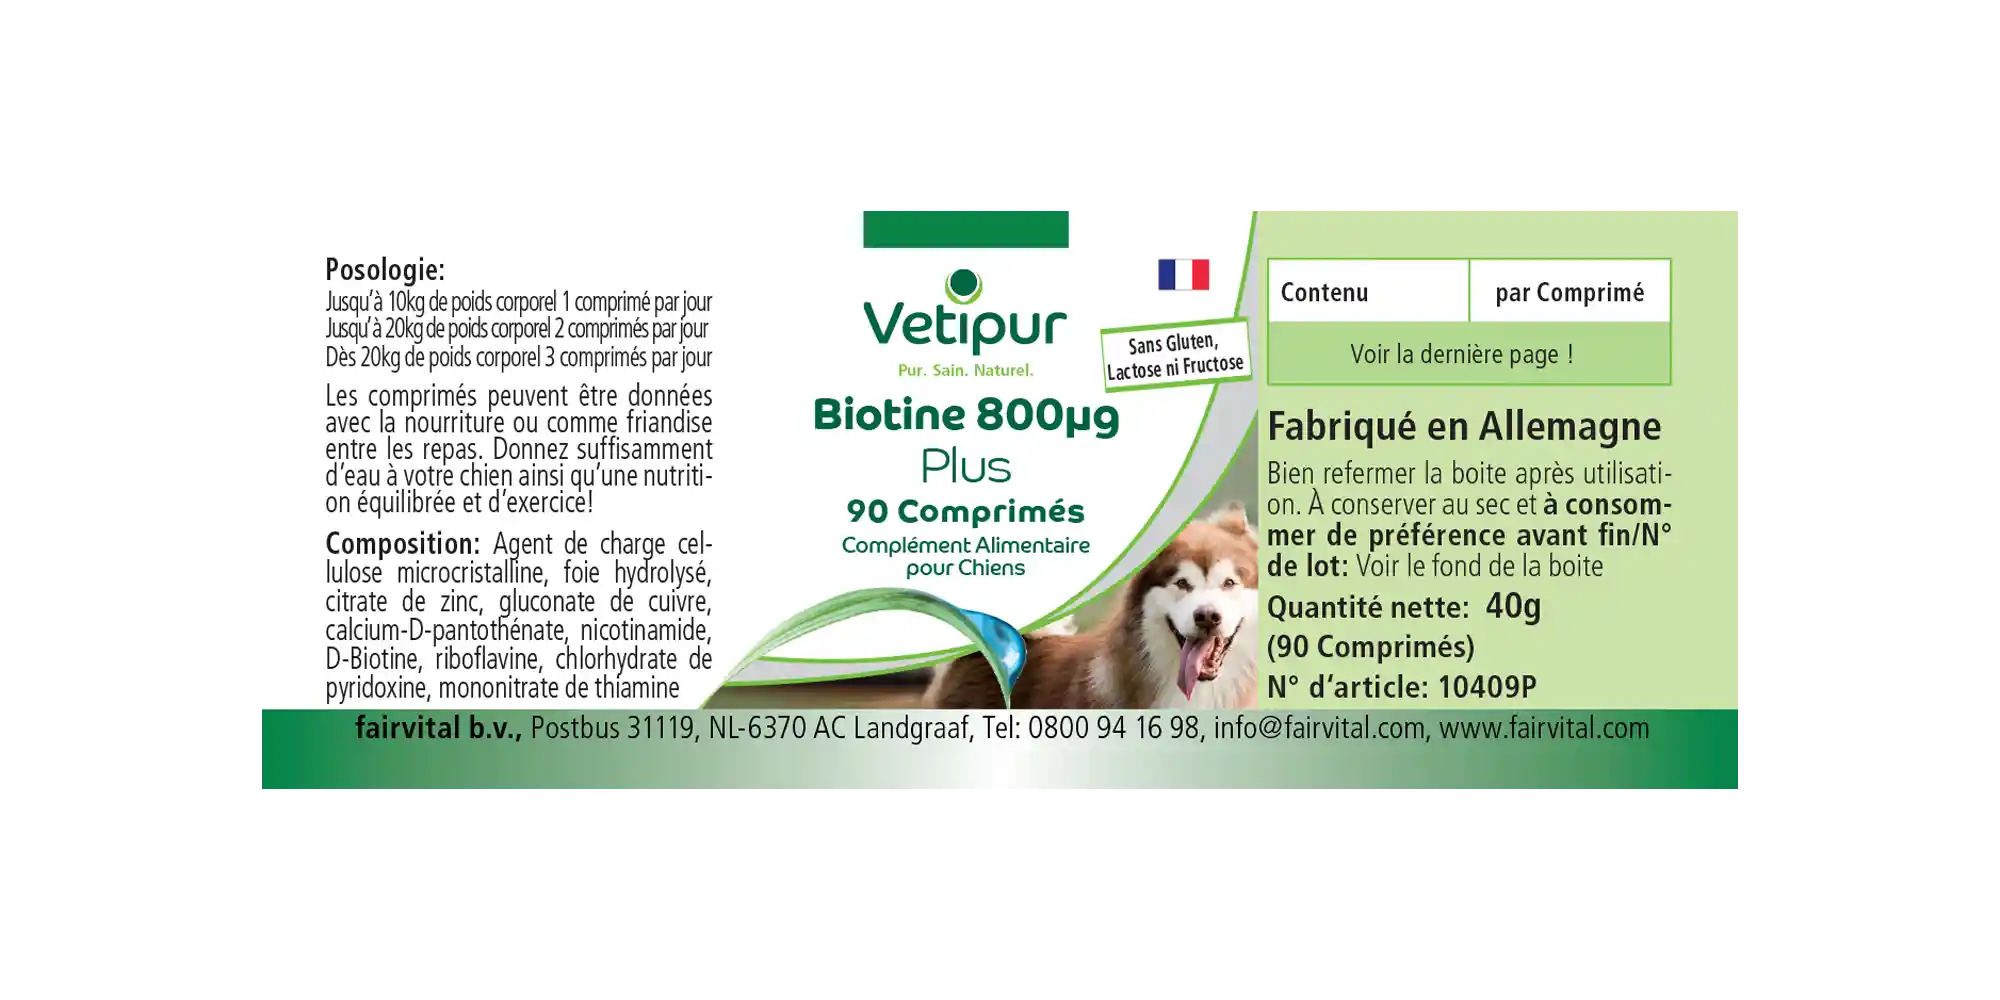 Biotina 800µg - 90 compresse per cani | Vetipur